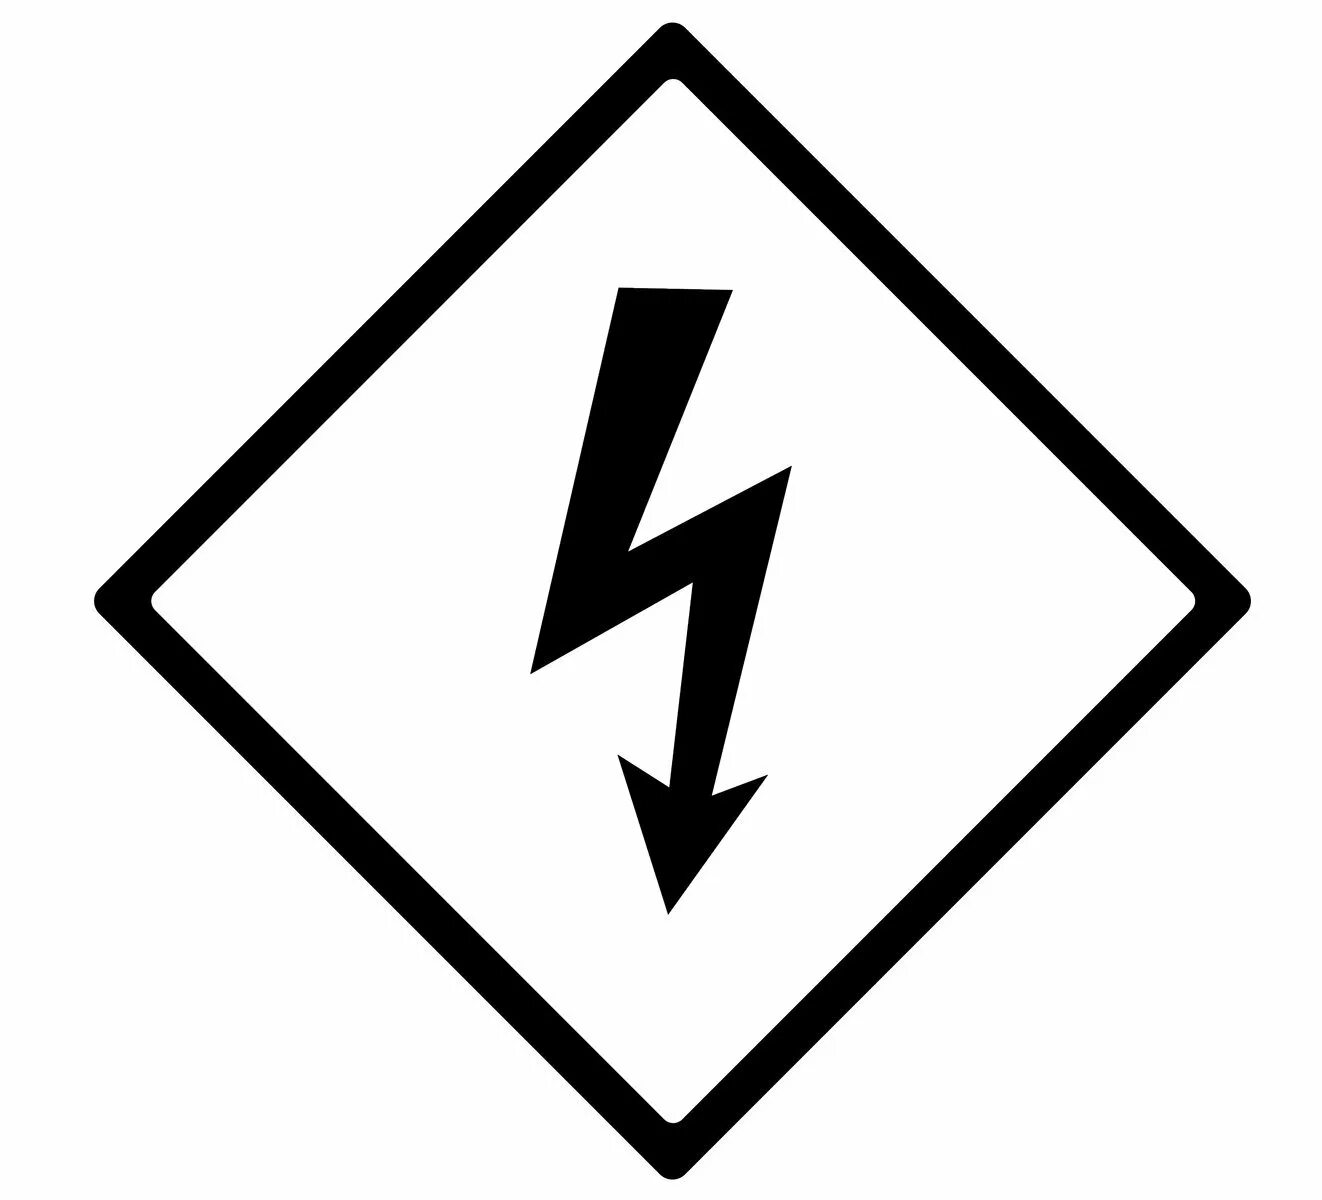 Знак молния TDM sq0817-0015. Знак электричества. Молния пиктограмма. Значок электричества. Что означает знак с молнией